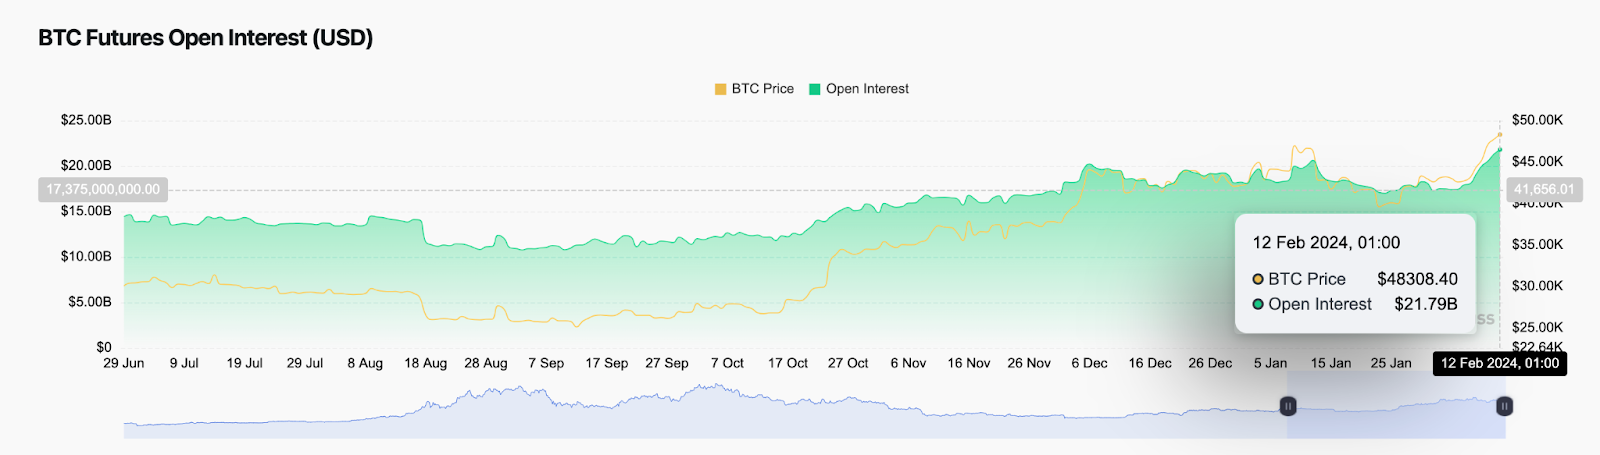 Bitcoin atinge o pico de juros em aberto de 3 anos em US$ 22 bilhões, aqui está o que isso significa para o preço do BTC